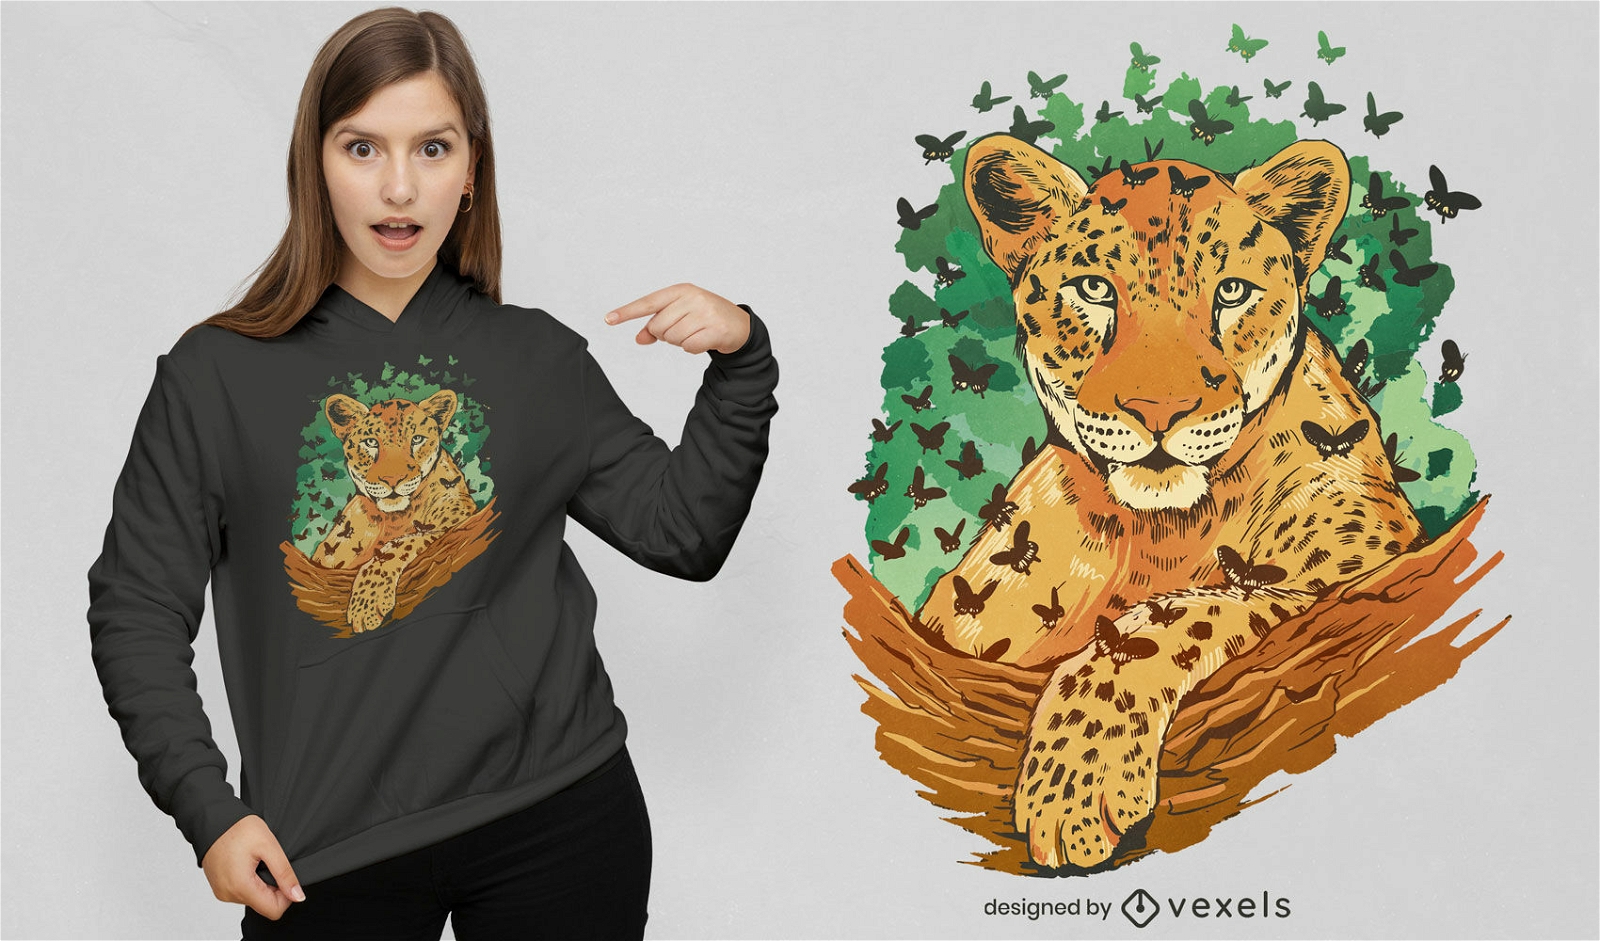 Leopard and butterflies t-shirt design